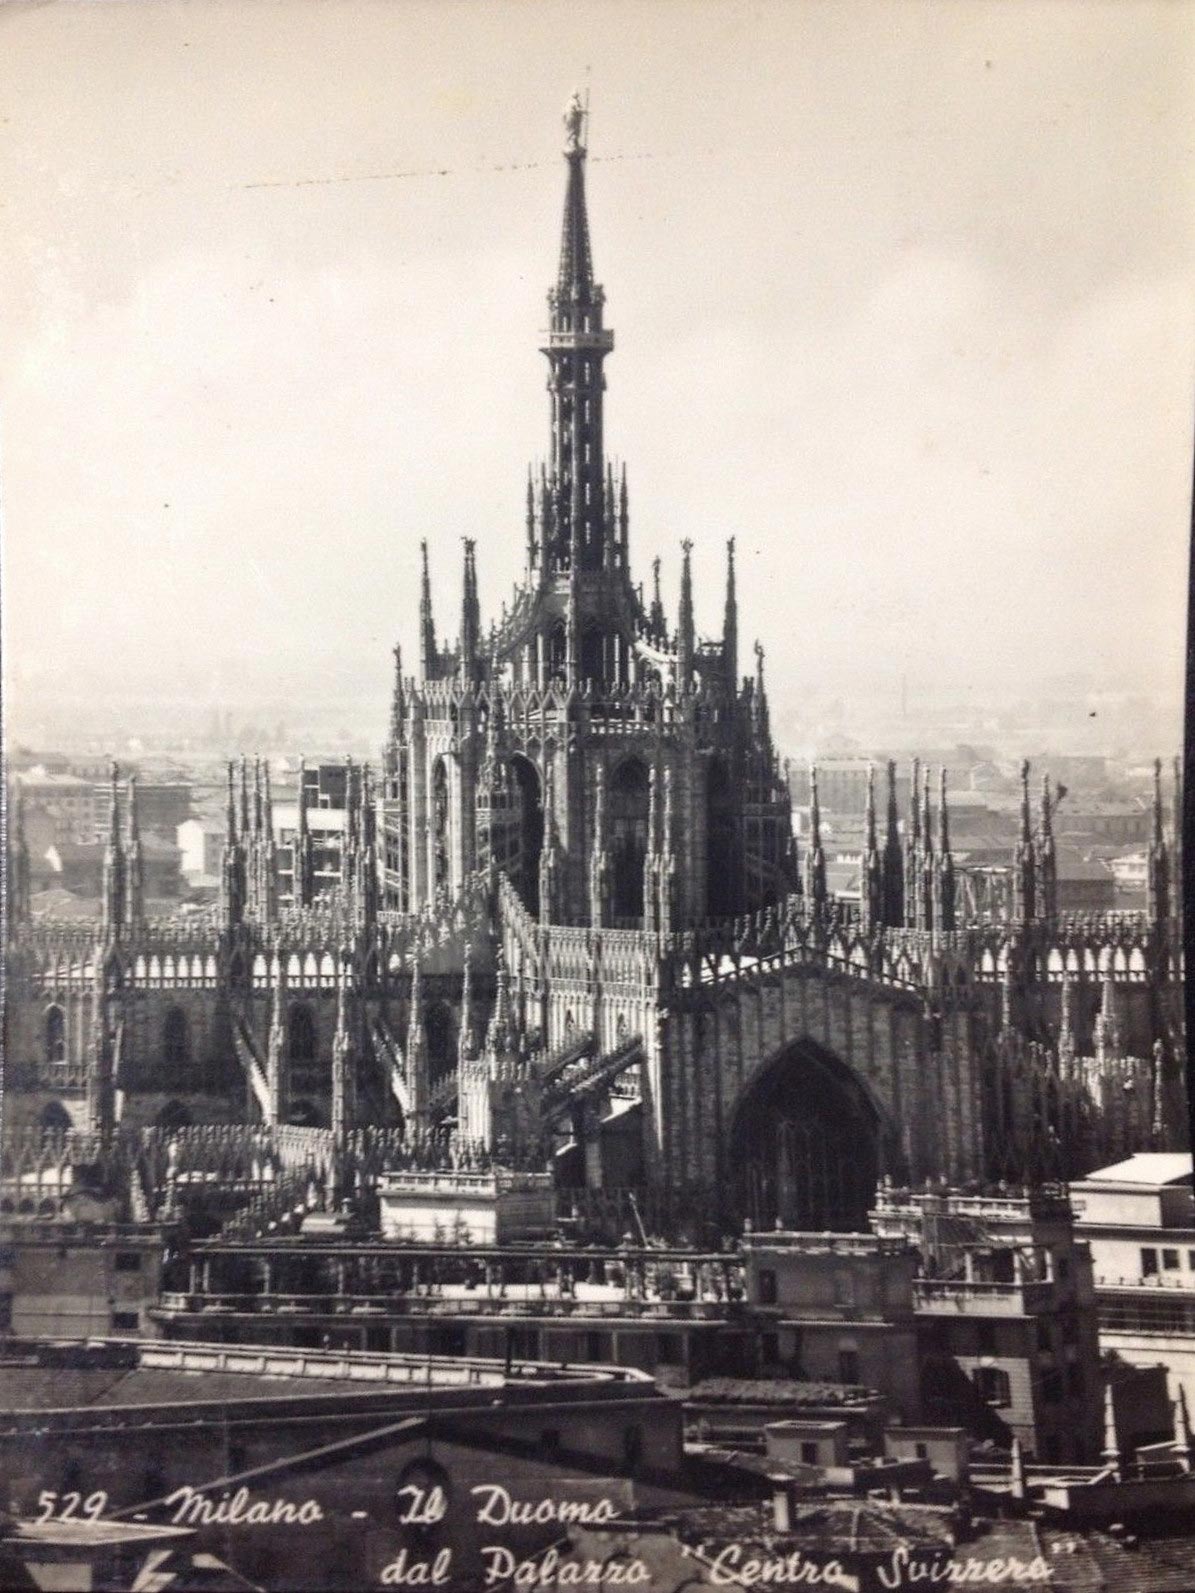 Duomo di Milano, Duomo in Milan, Milano Drone, Drone Milan, Milano dall'alto, Drone Duomo Milano, Vecchia Milano, Milano in passato